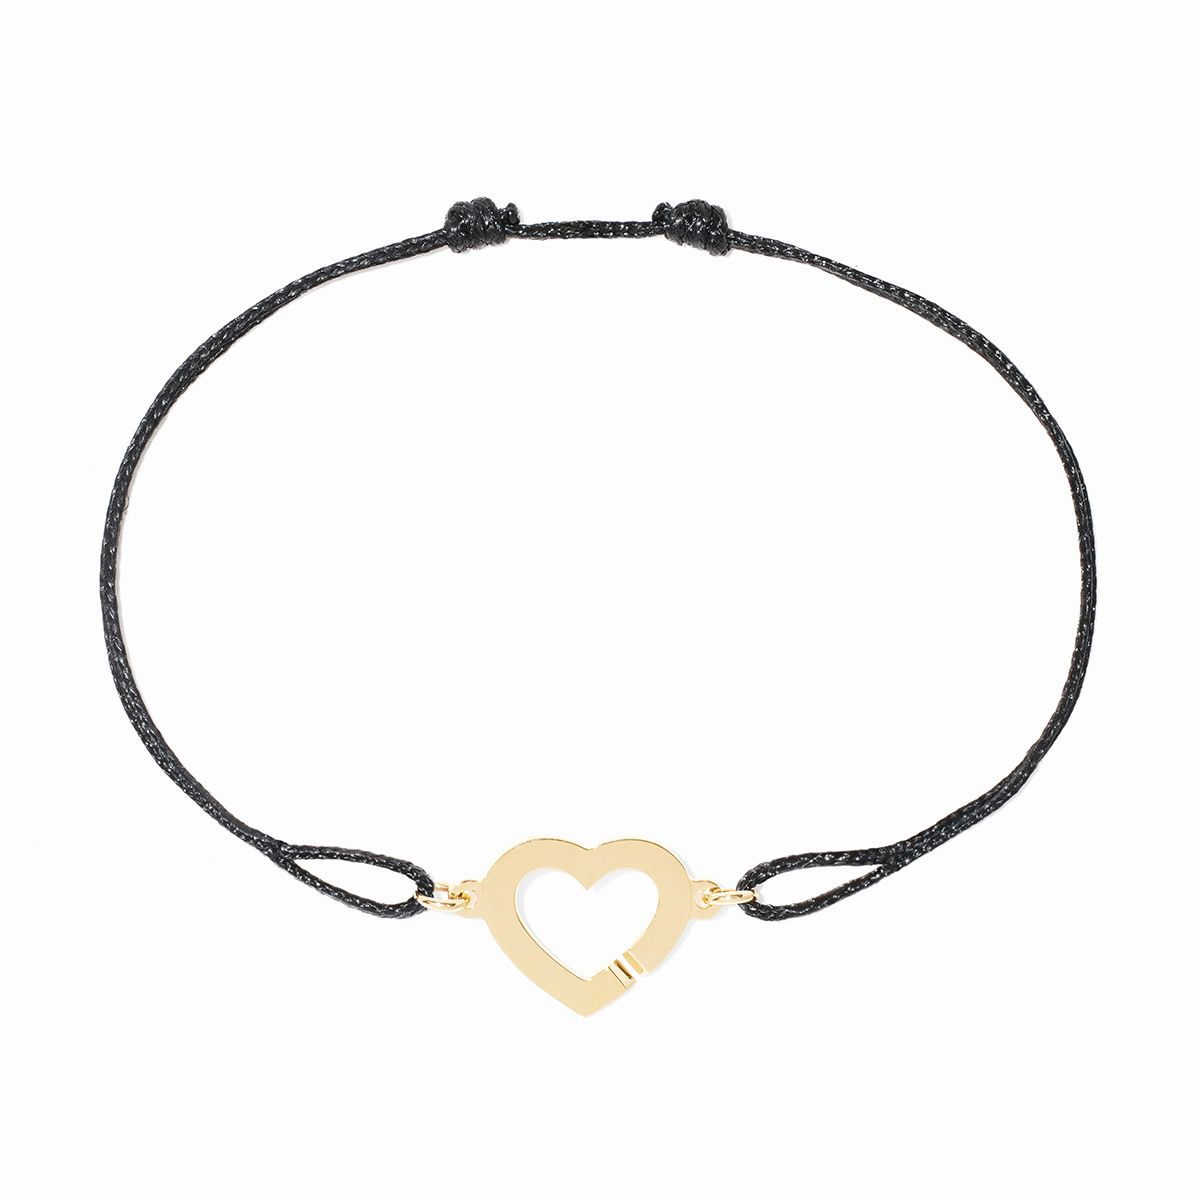 Coeur R12 cord bracelet